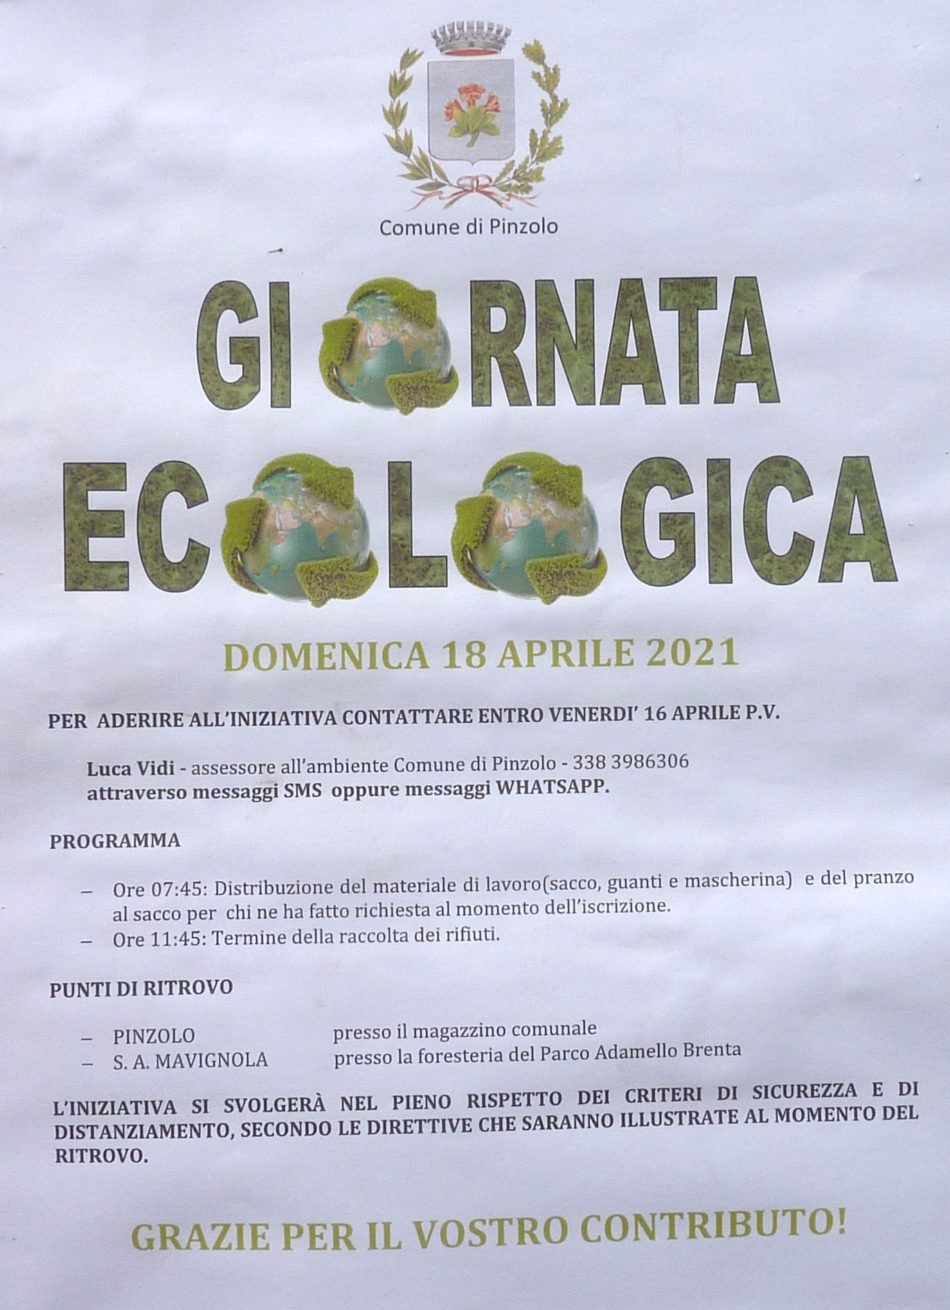 Giornata ecologica – Domenica 18 aprile 2021